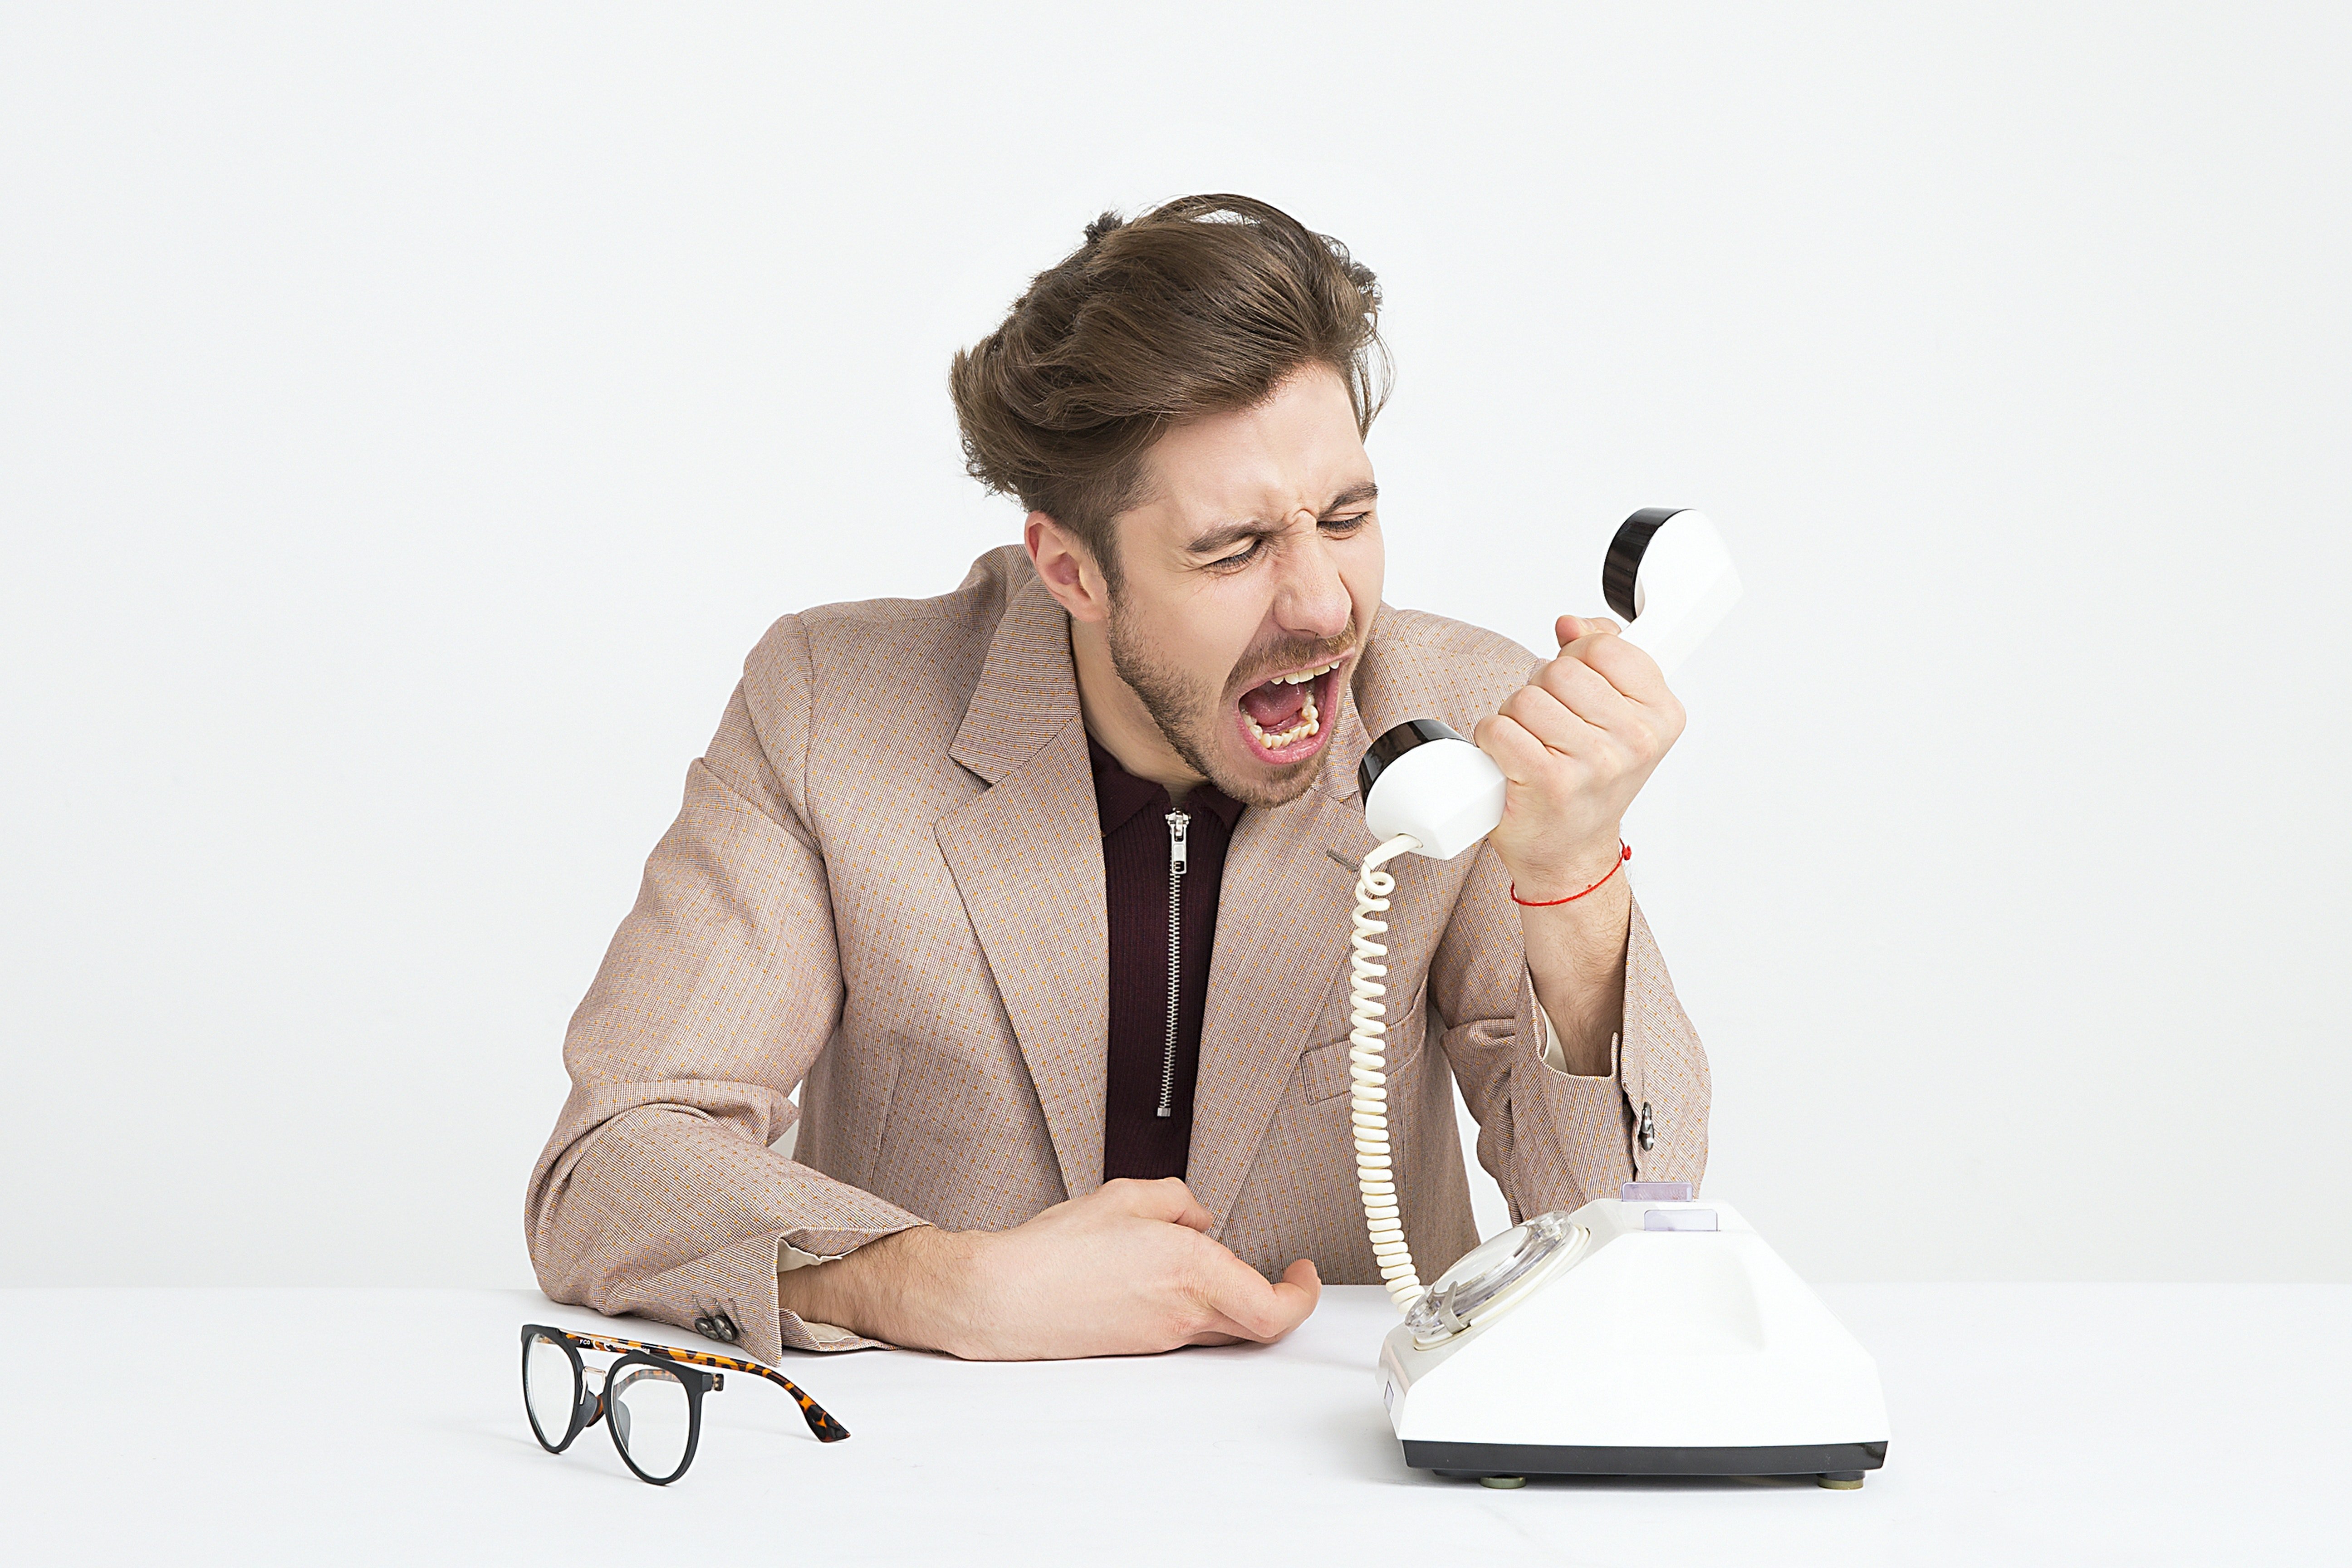 Man Wearing Brown Suit Jacket Mocking on White Telephone| Photo: Pexels